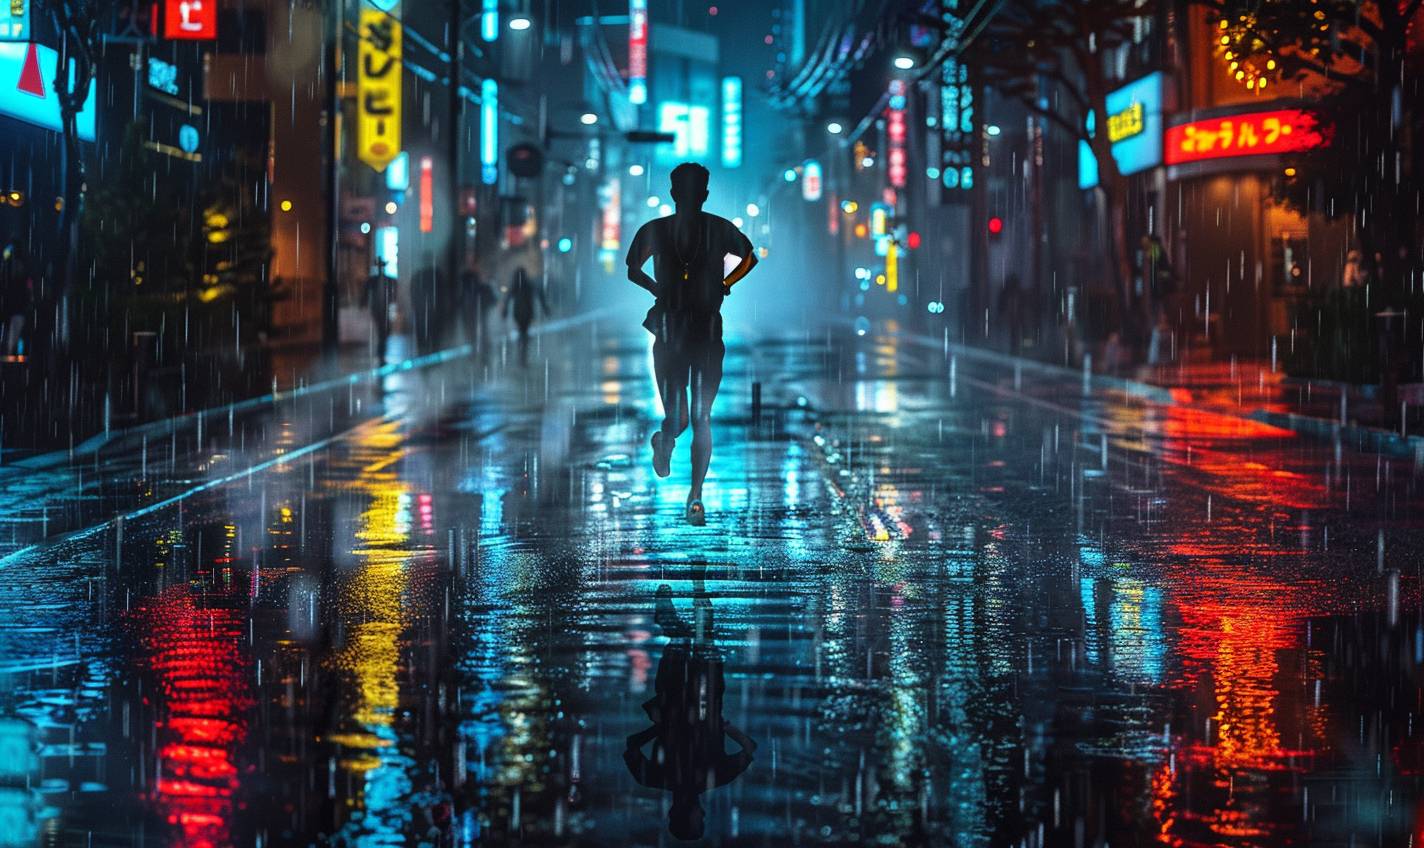 夜、雨にぬれた街を駆け抜ける男性。湿った舗道に反射するネオンライトが、彼の決意の表情を照らし出している。